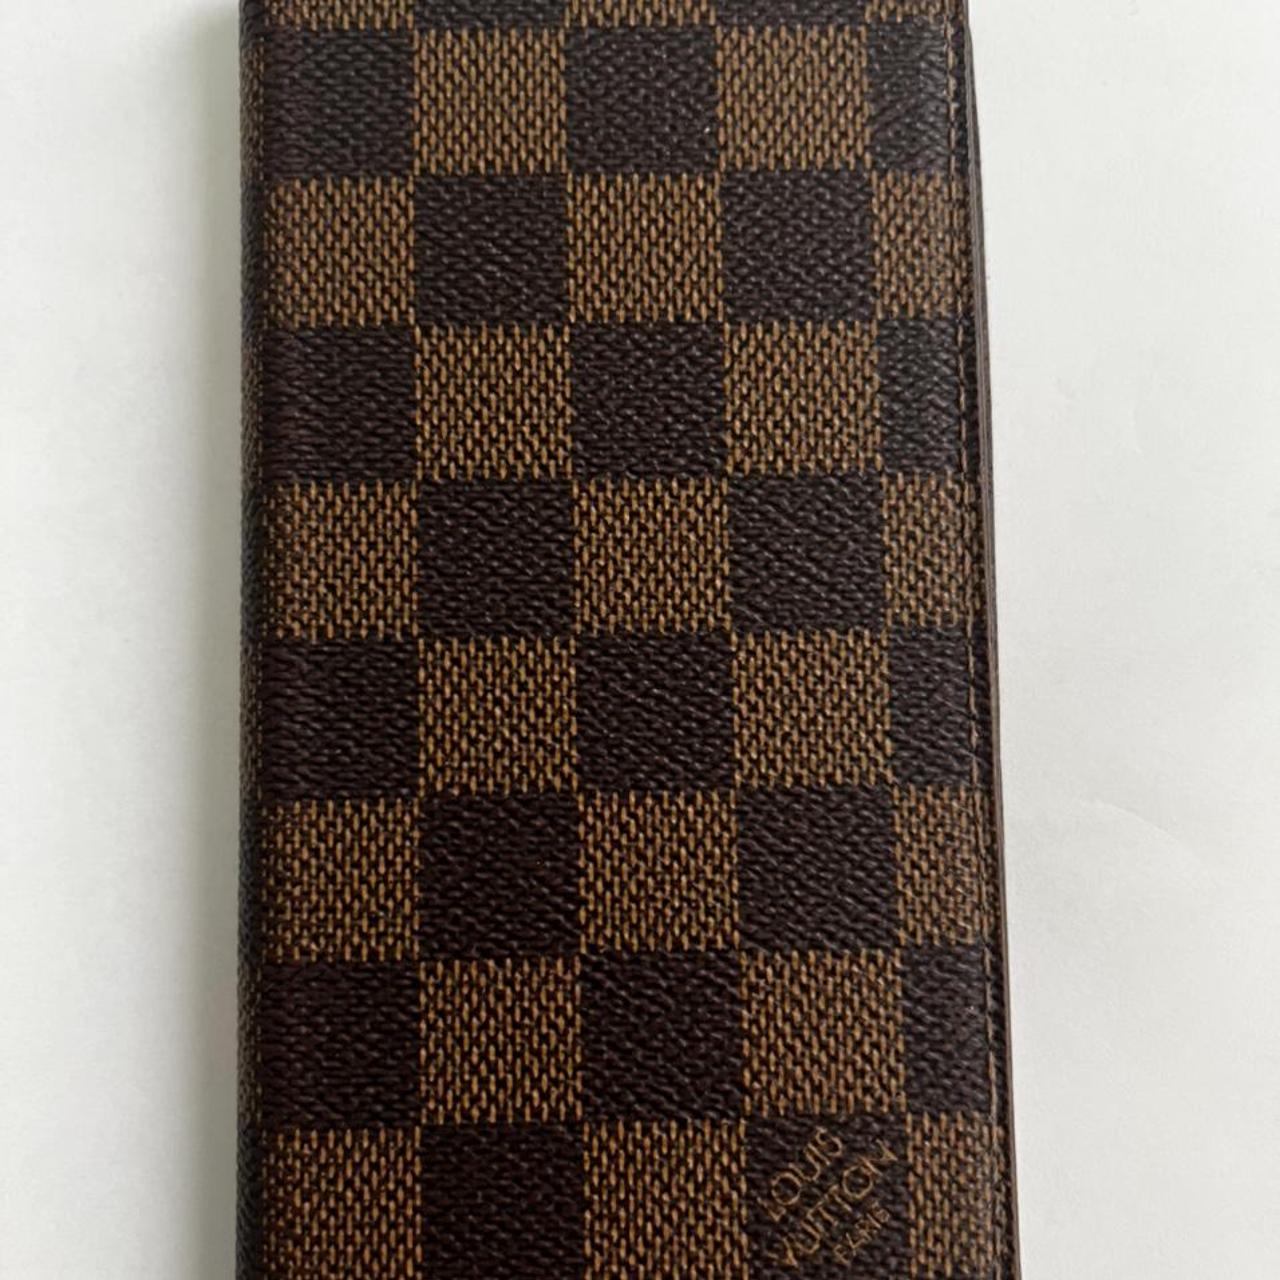 Louis Vuitton Flip Folio Case •iPhone 7/8 plus • - Depop